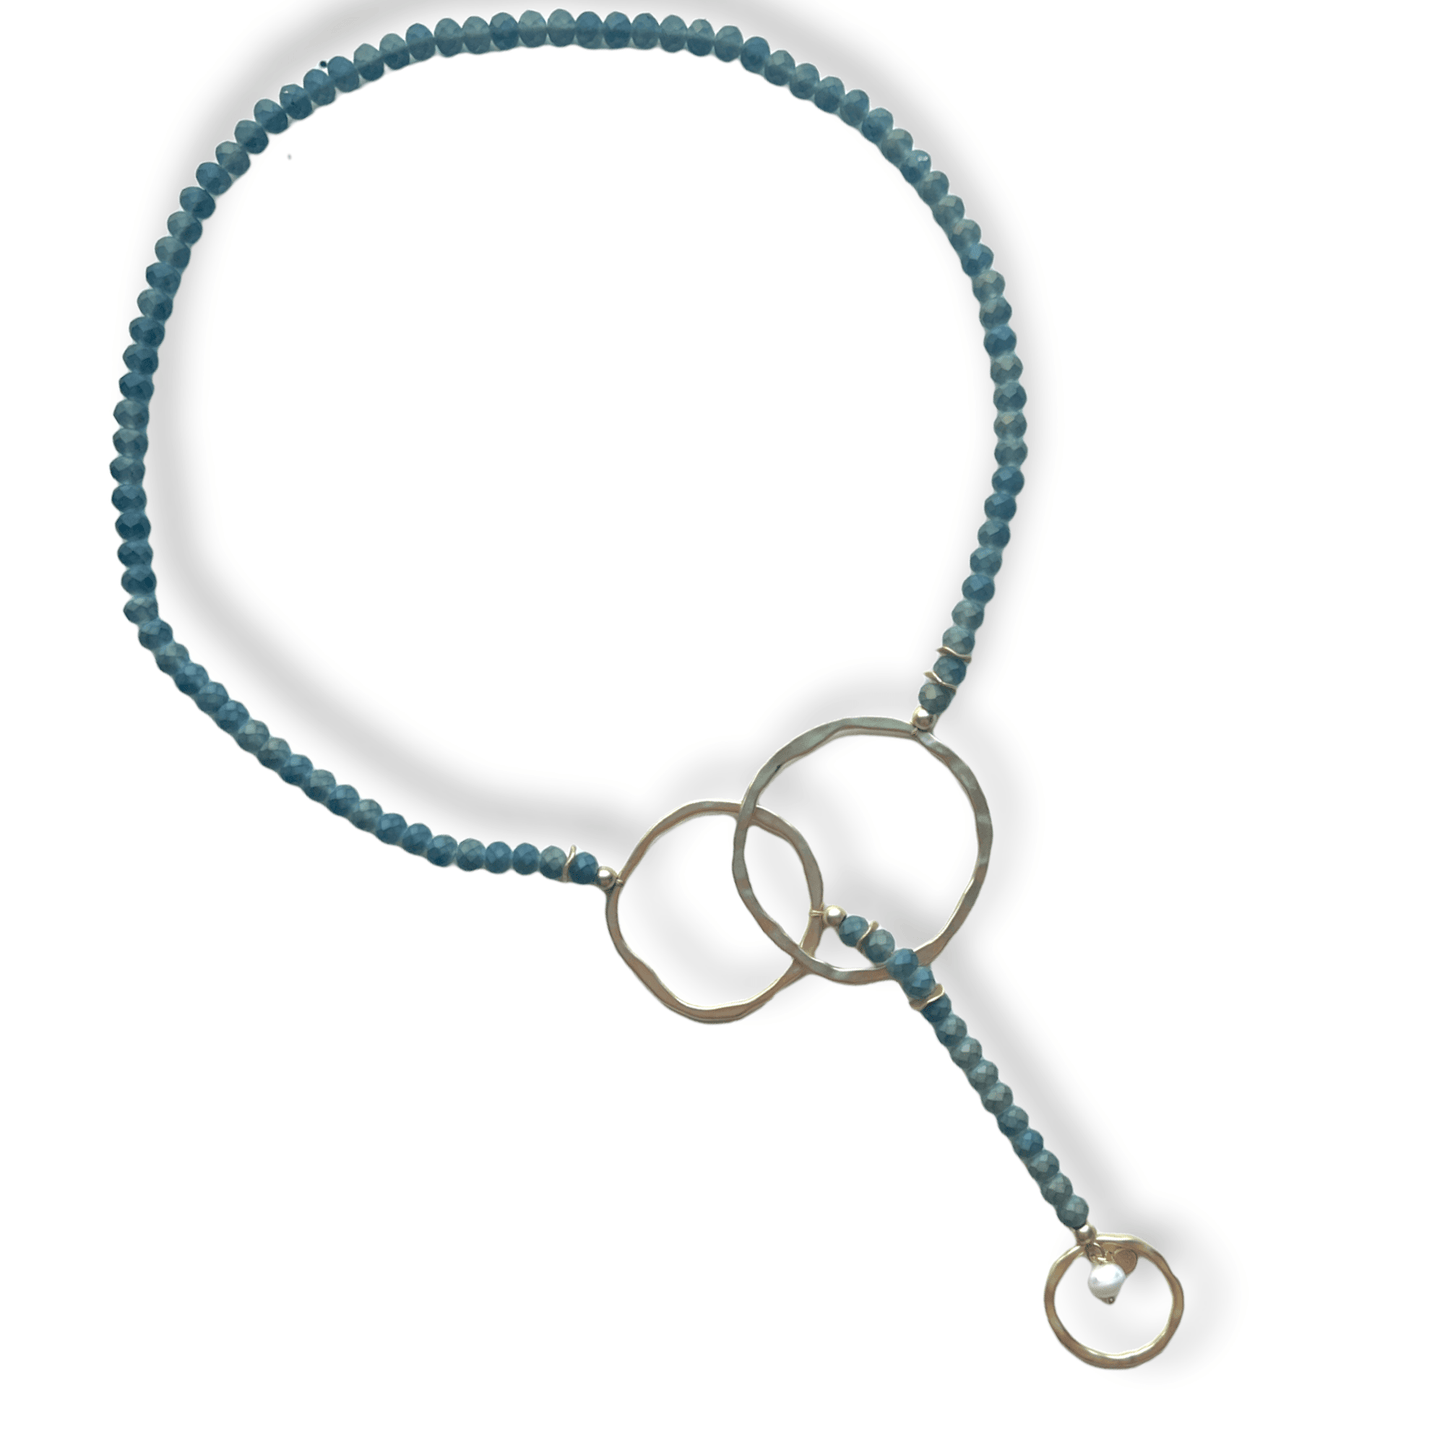 Smoky quartz beaded lariat necklace with pearl - Sundara Joon